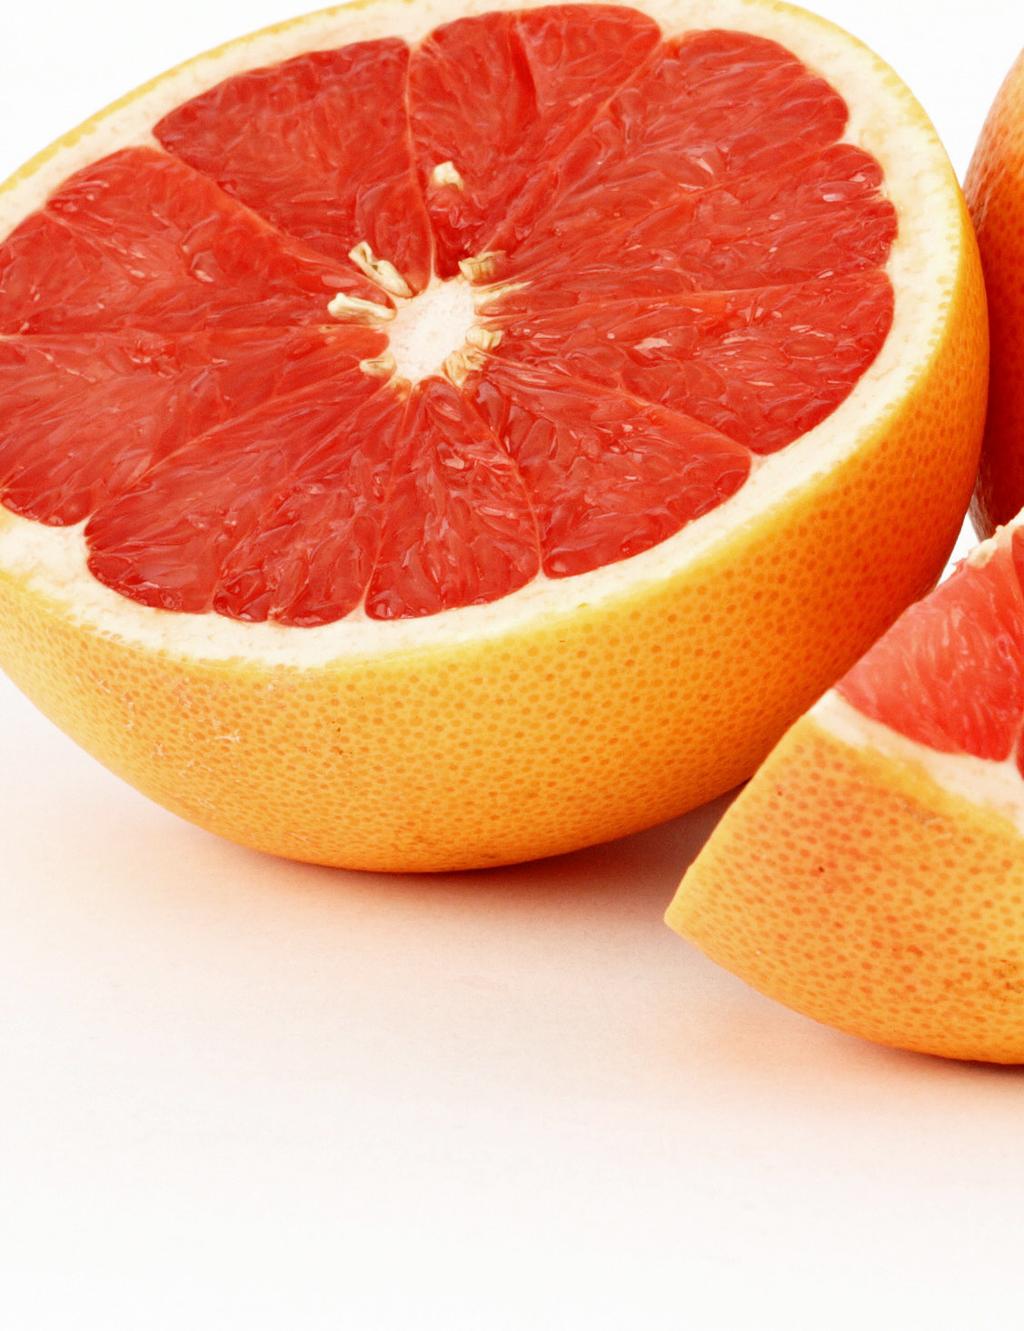 calmante TORANJA GRAPEFRUIT (Citrus paradisi) O grapefruit é originário dos Estados Unidos e de Israel, tem aroma leve, cítrico e amargo. É um óleo amarelo-claro. Enrijece e fortalece a musculatura.